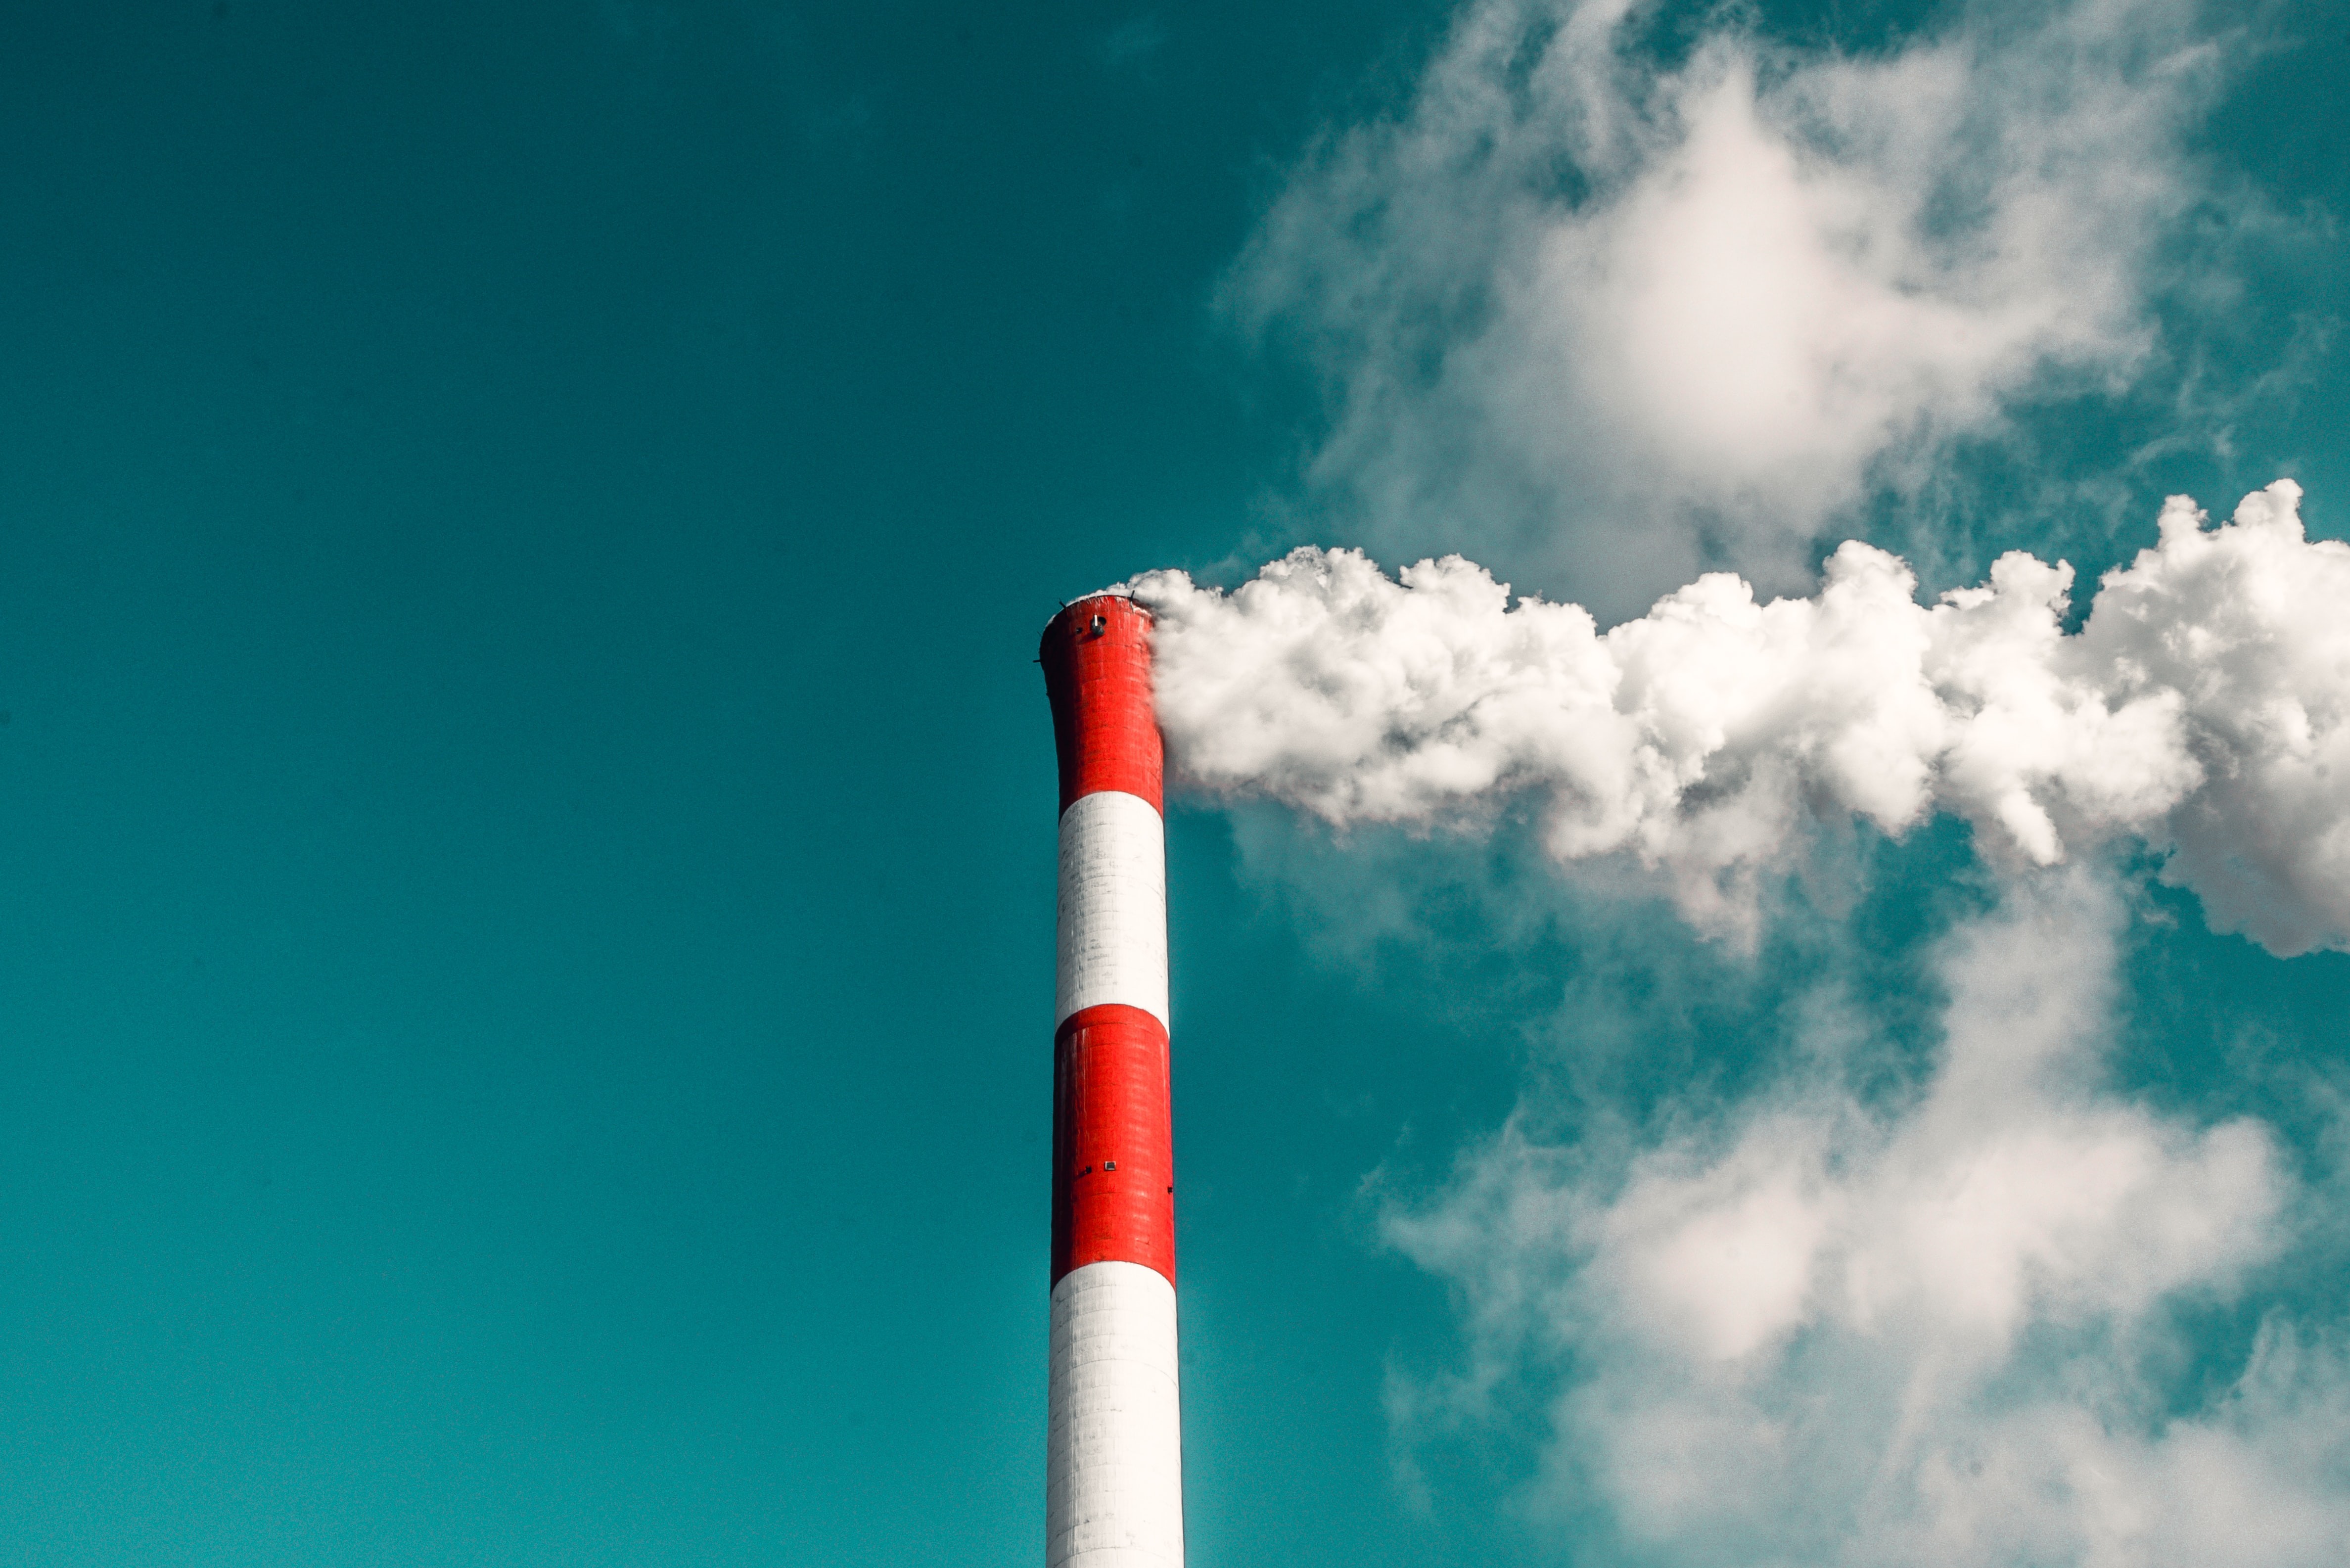 Taxa de redução global de CO2 precisa ser multiplicada por dez para que as metas do Acordo de Paris sejam cumpridas, diz estudo (Foto: veeterzy/Unsplash)